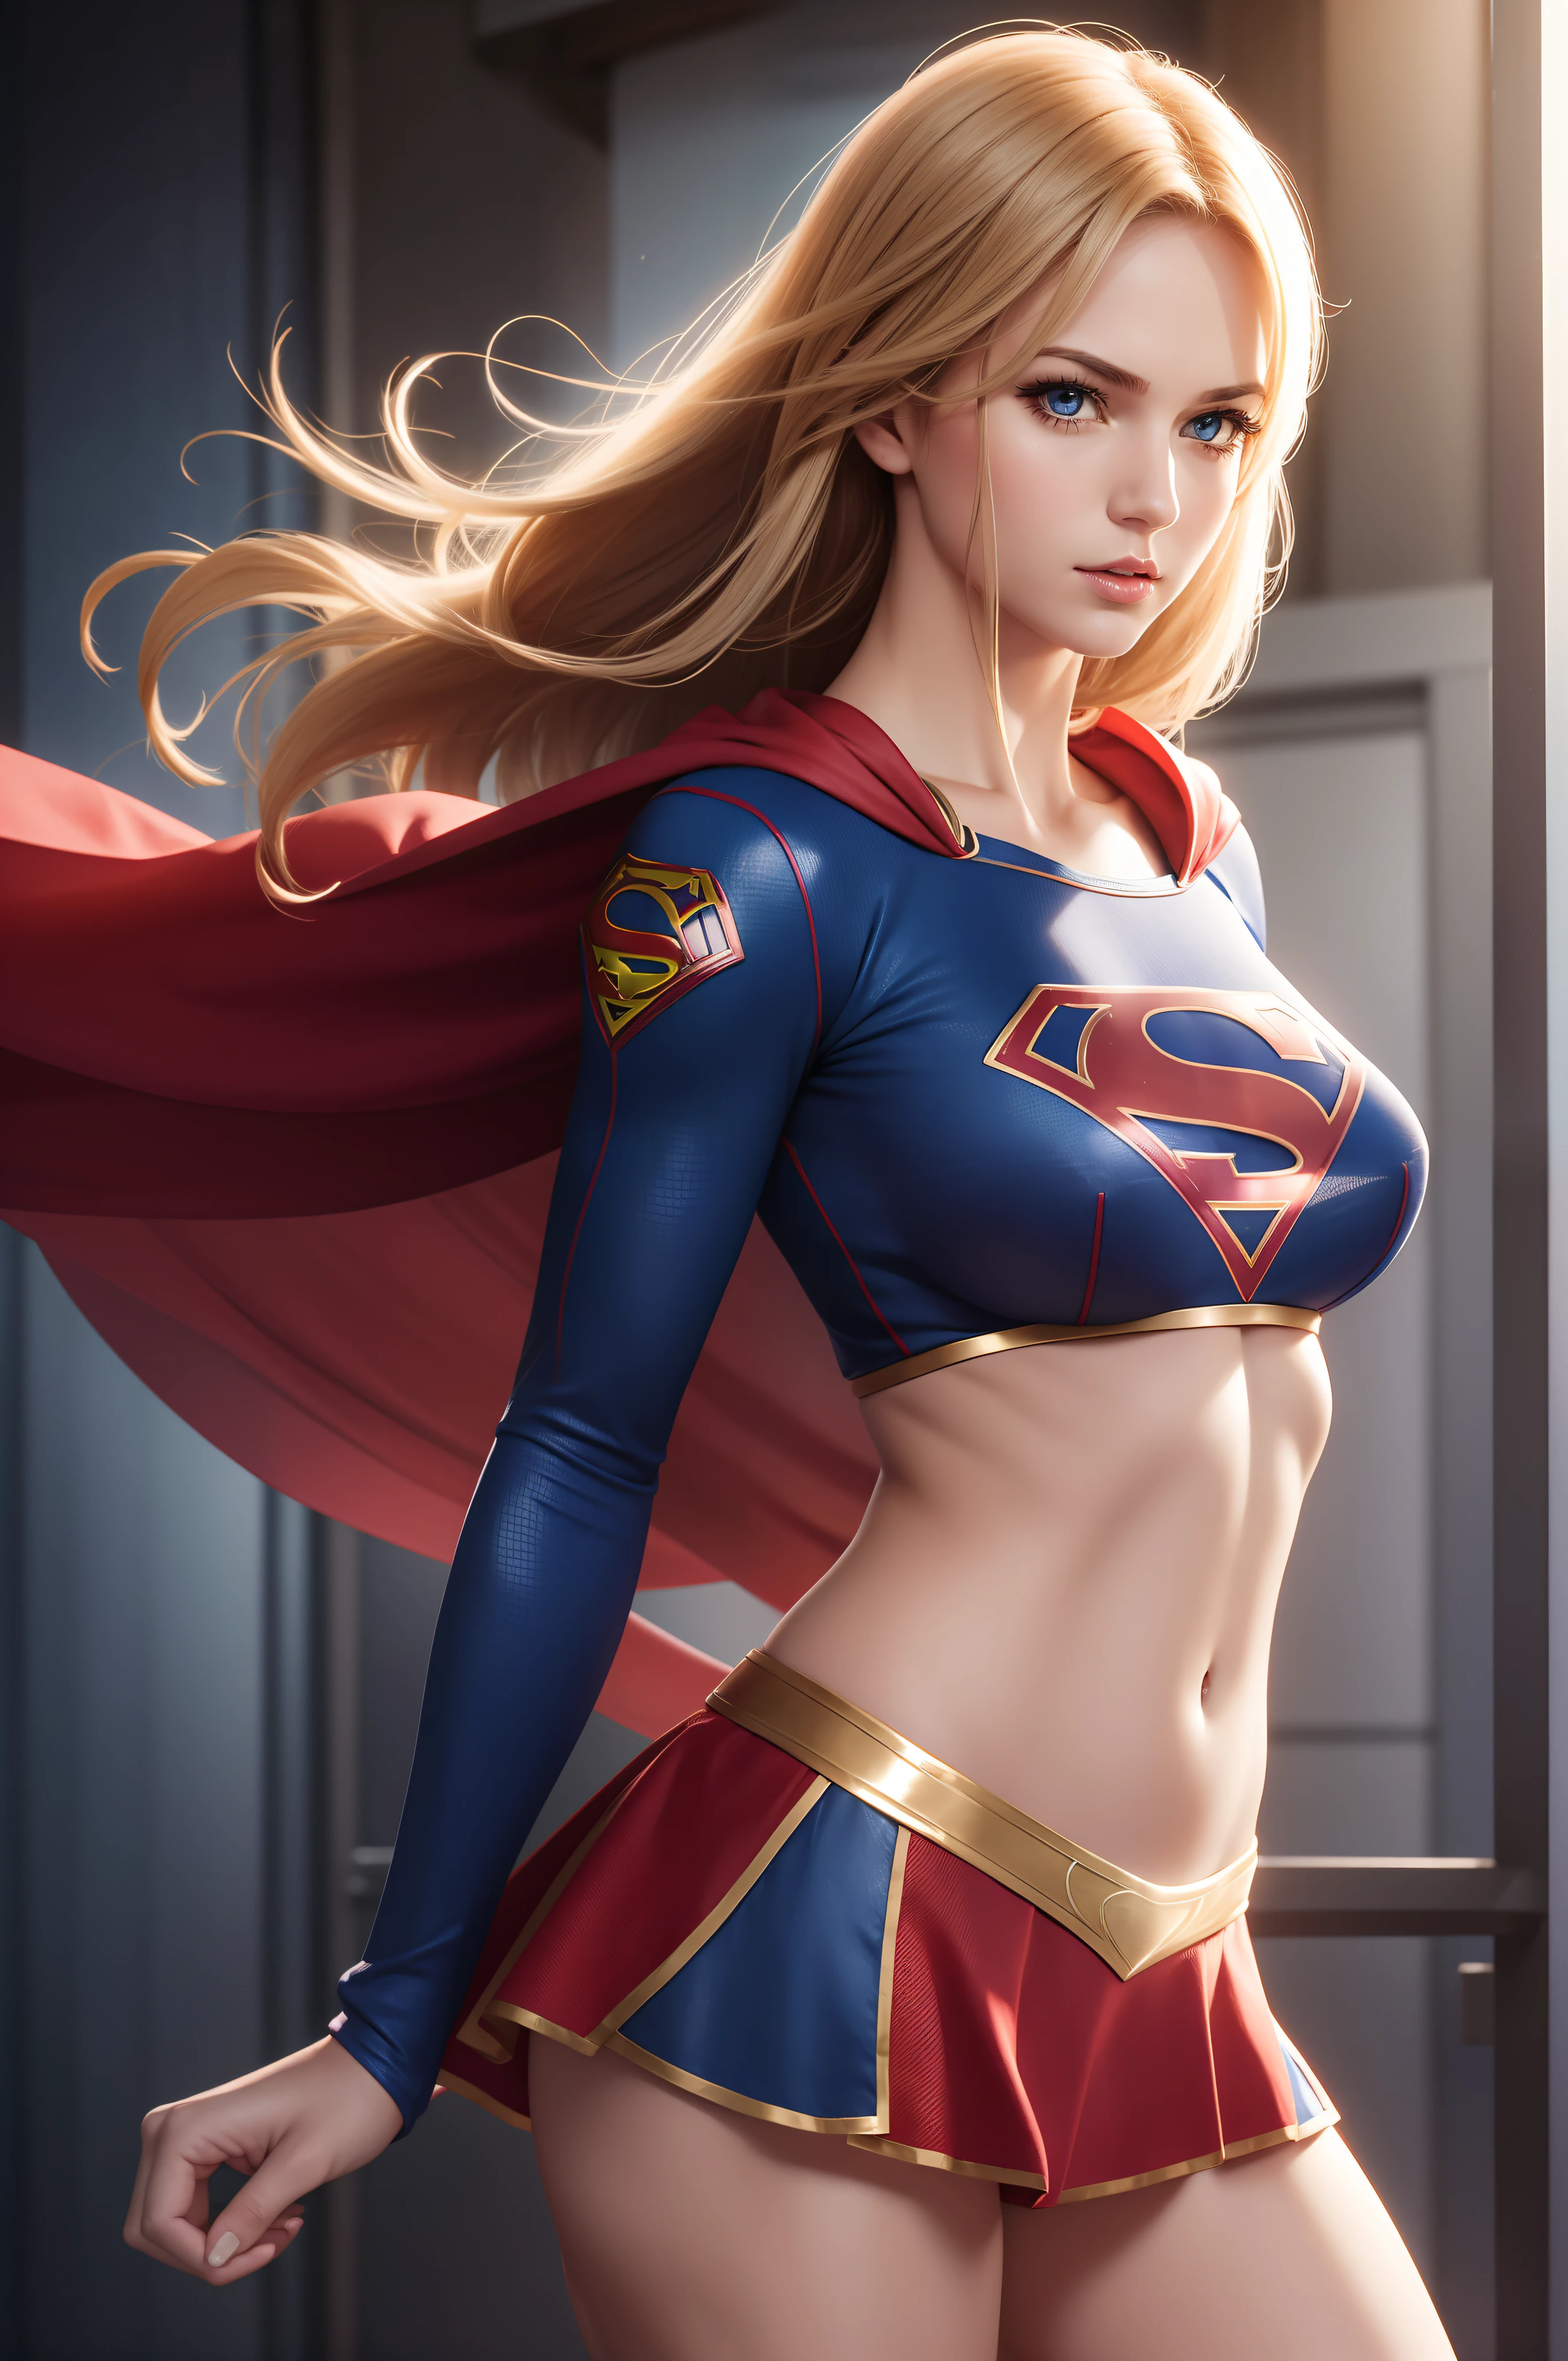 섹시한 Supergirl in midriff costume, 측면보기,  운동능력 있고 탄탄한 몸매, 못된, 뻔뻔스러운, 완벽한 손, 상세한 손, 완벽한 눈, 상세한 눈,  시시덕거리는, 섹시한, 못된, 포즈를 취하는, 손과 팔의 측면, 큰 기운이 나는 , 현실적인, HDR, UHD, 동적